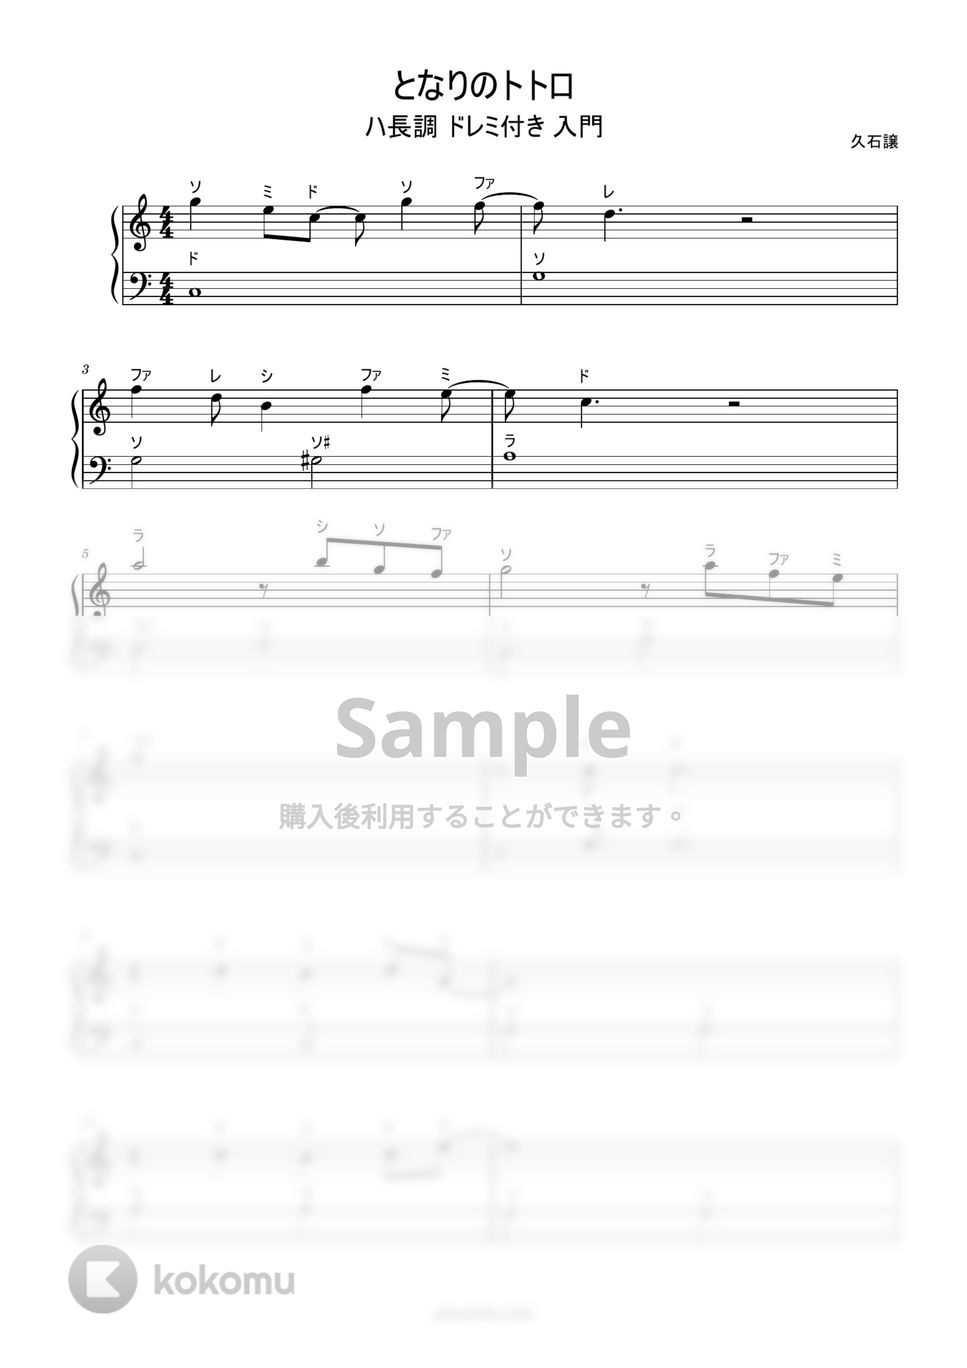 久石譲 - となりのトトロ (ドレミ付き簡単楽譜) by ピアノ塾